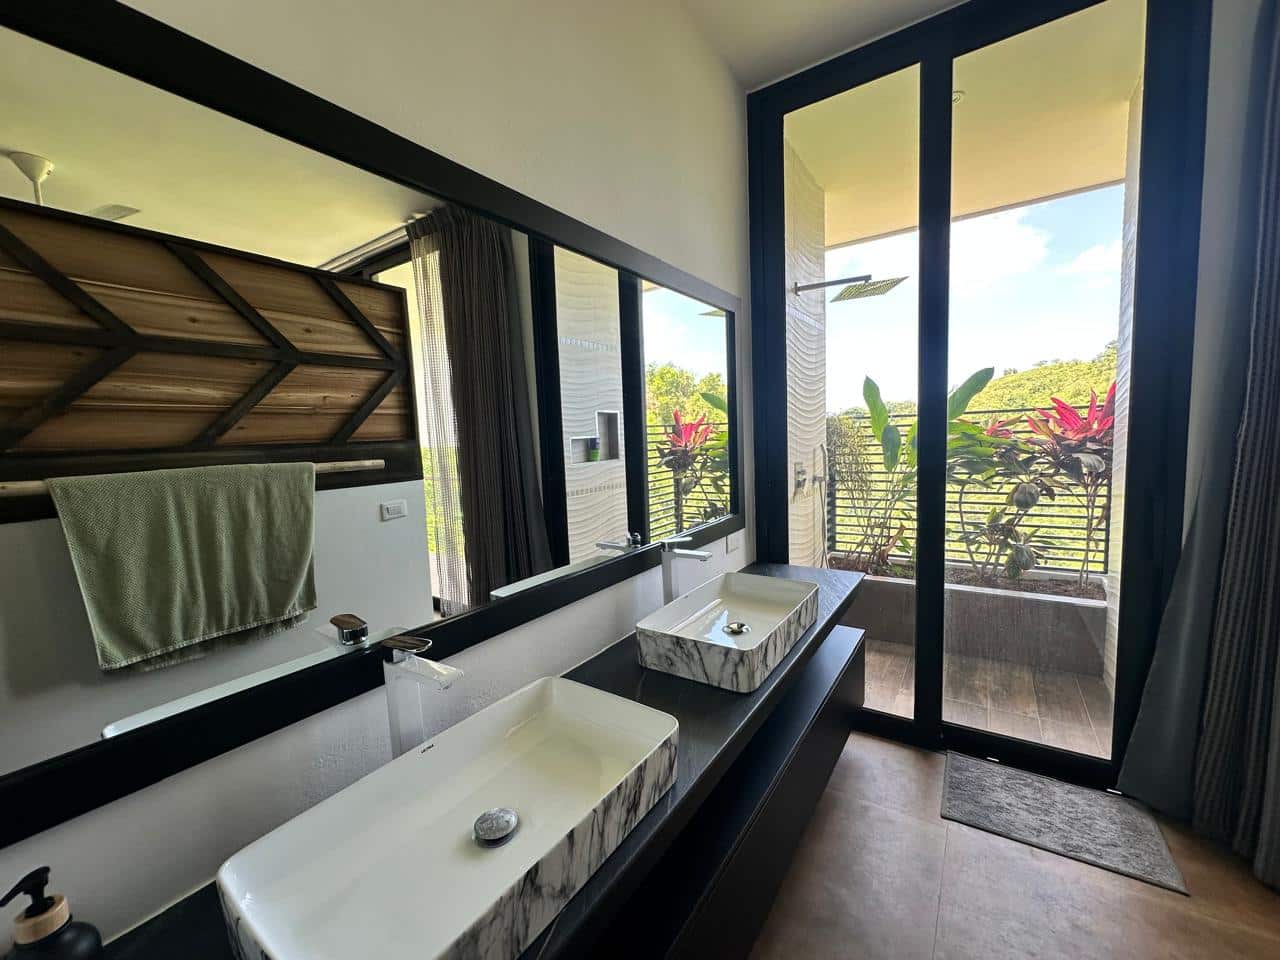 Splendid 4-bedroom villa with ocean vista - Las Terrenas Real Estate - Ocean Edge Dominican Republic (44)